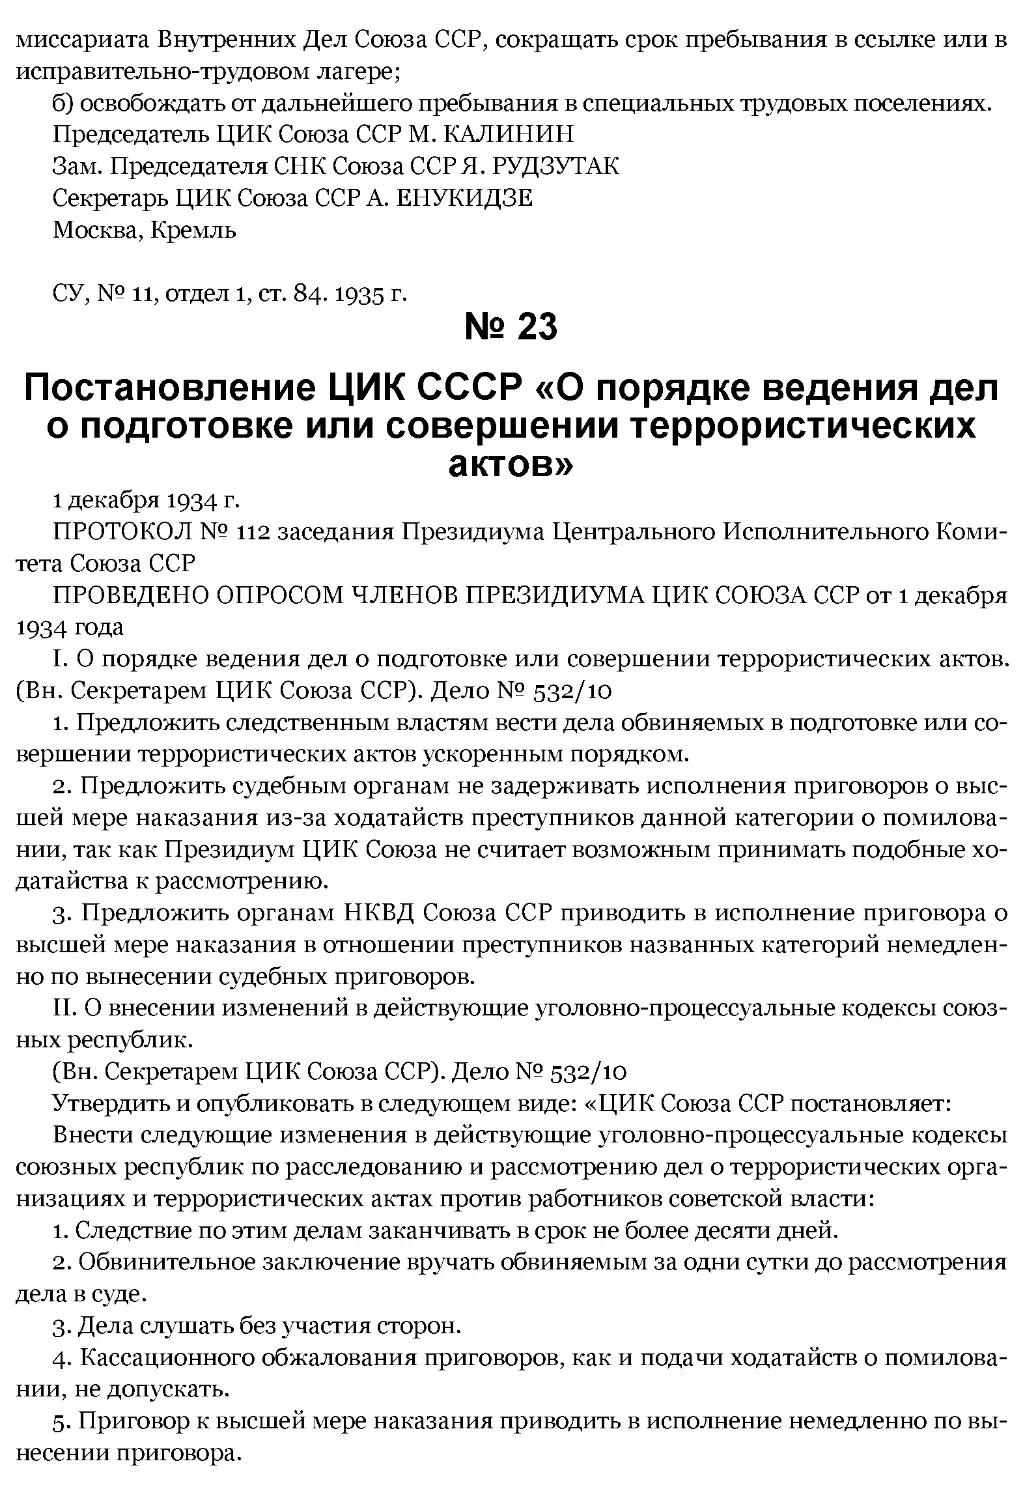 ﻿№ 23 Postanovlenie TSIK SSSR «O poryadke vedeniya del o podgotovke ili sovershenii terroristicheskih aktov